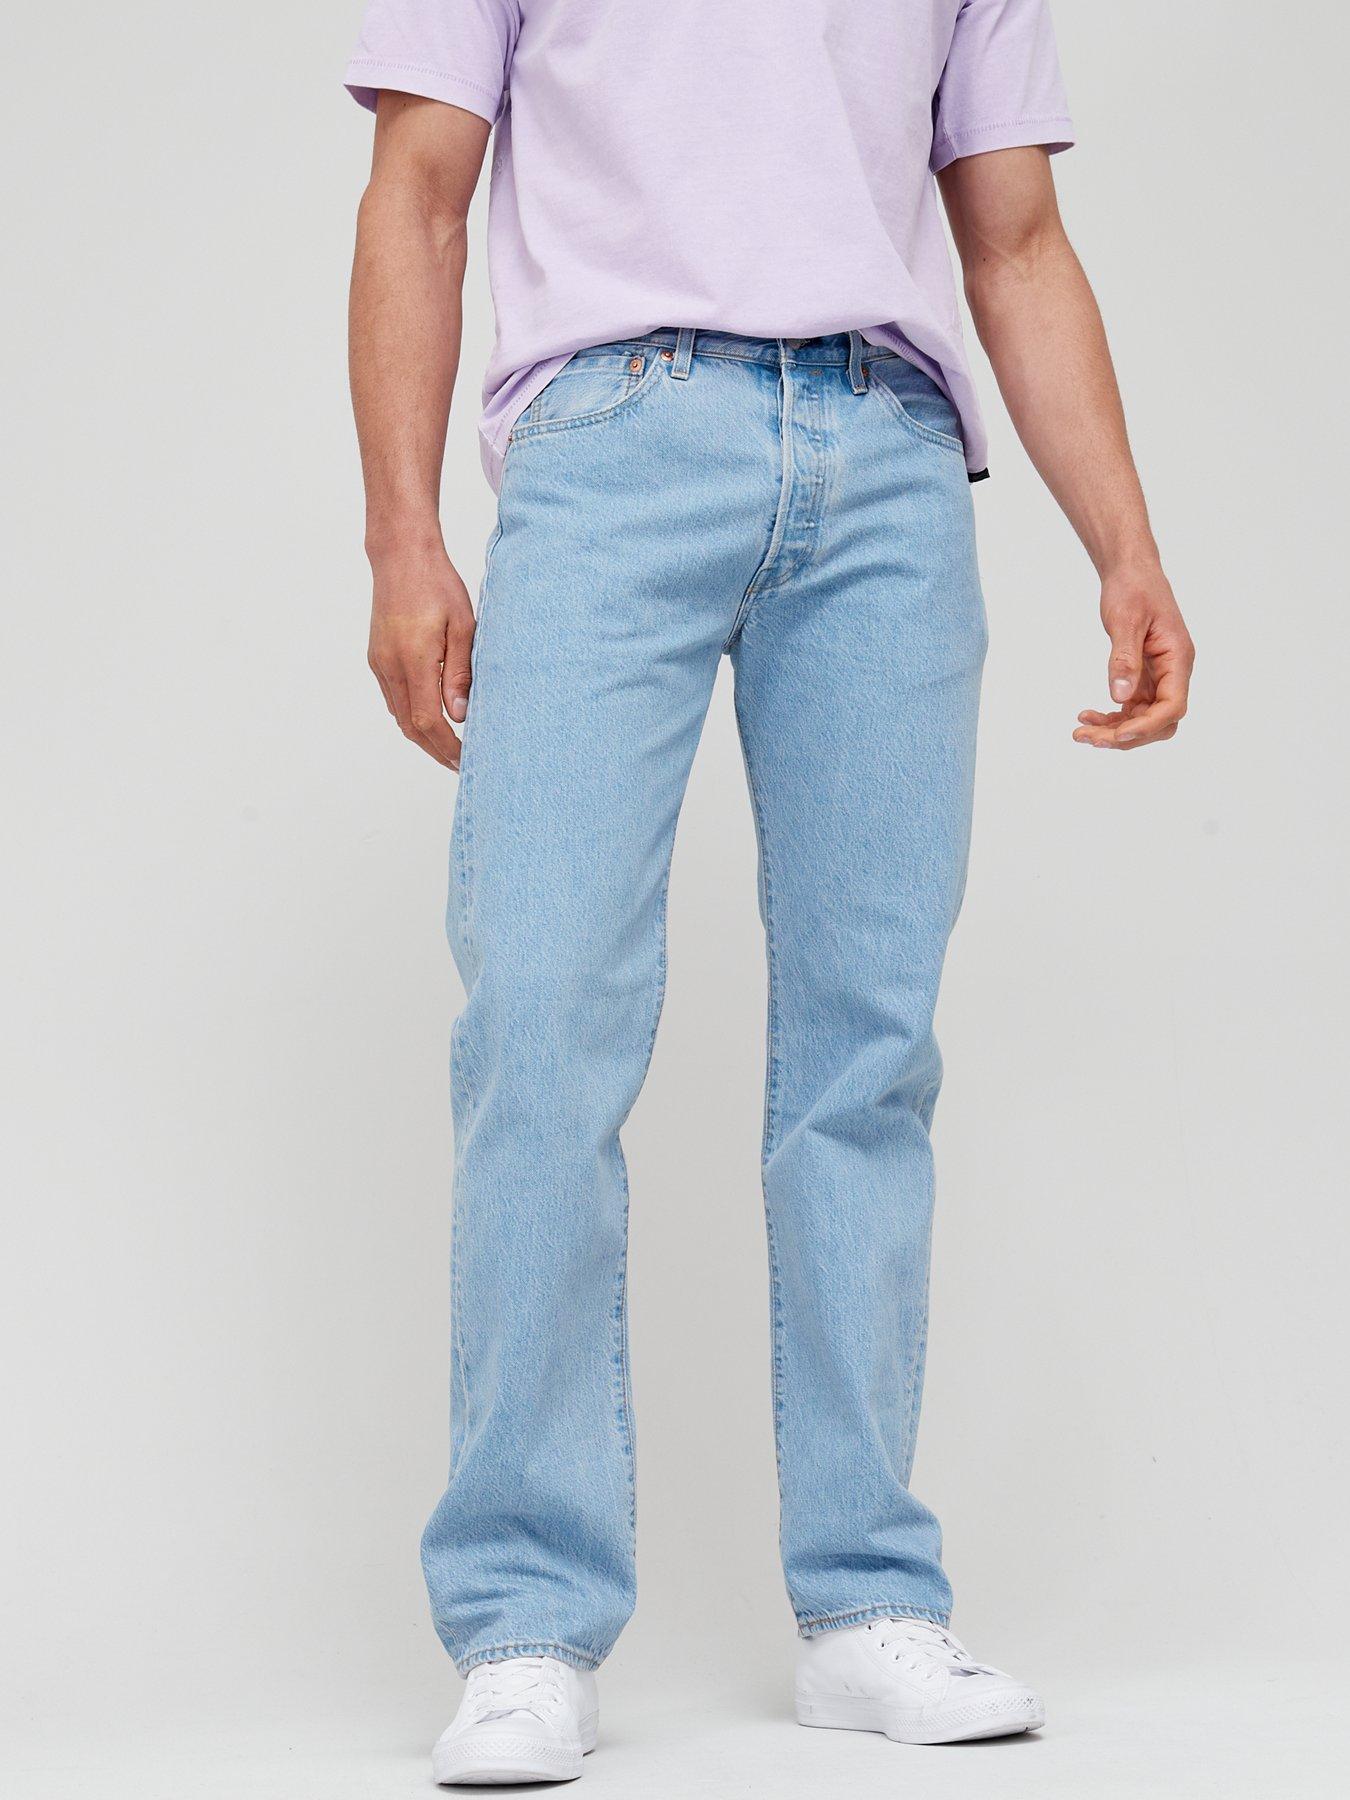 Levi's Levi's501® Original Straight Fit Jeans - Light Wash 